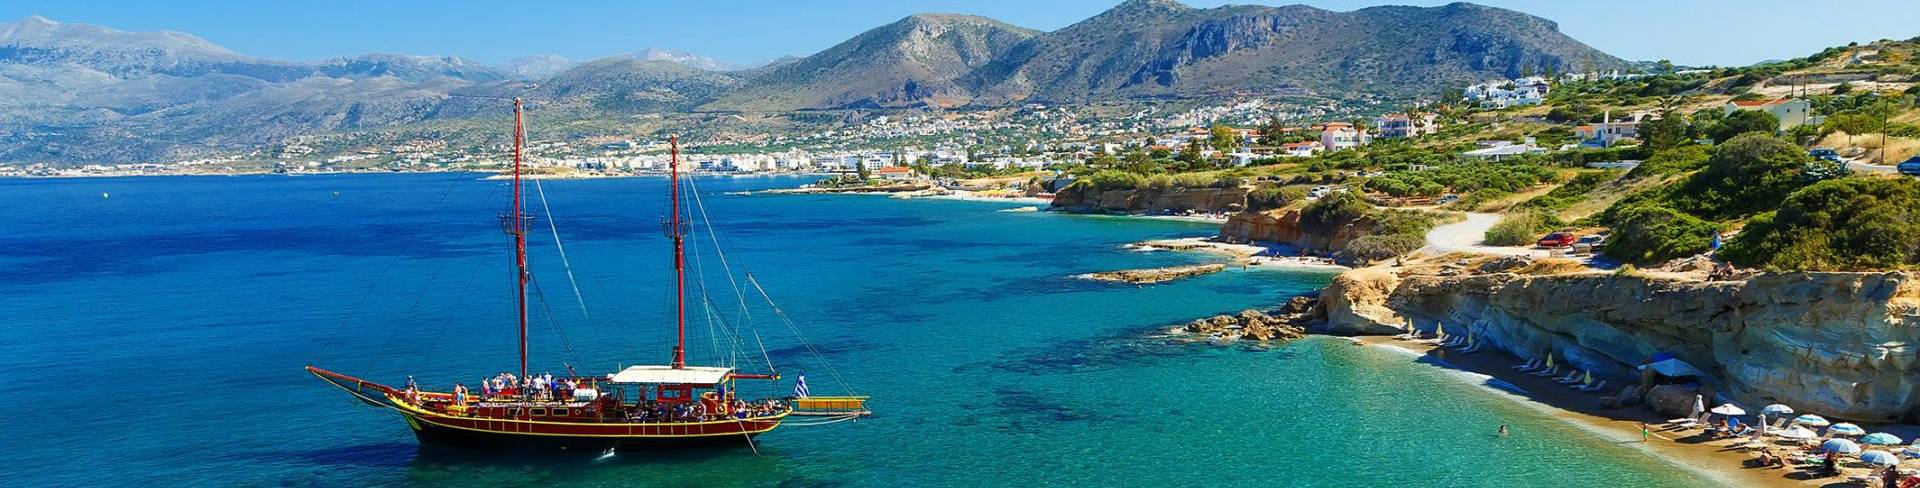 Крит - остров в Греции